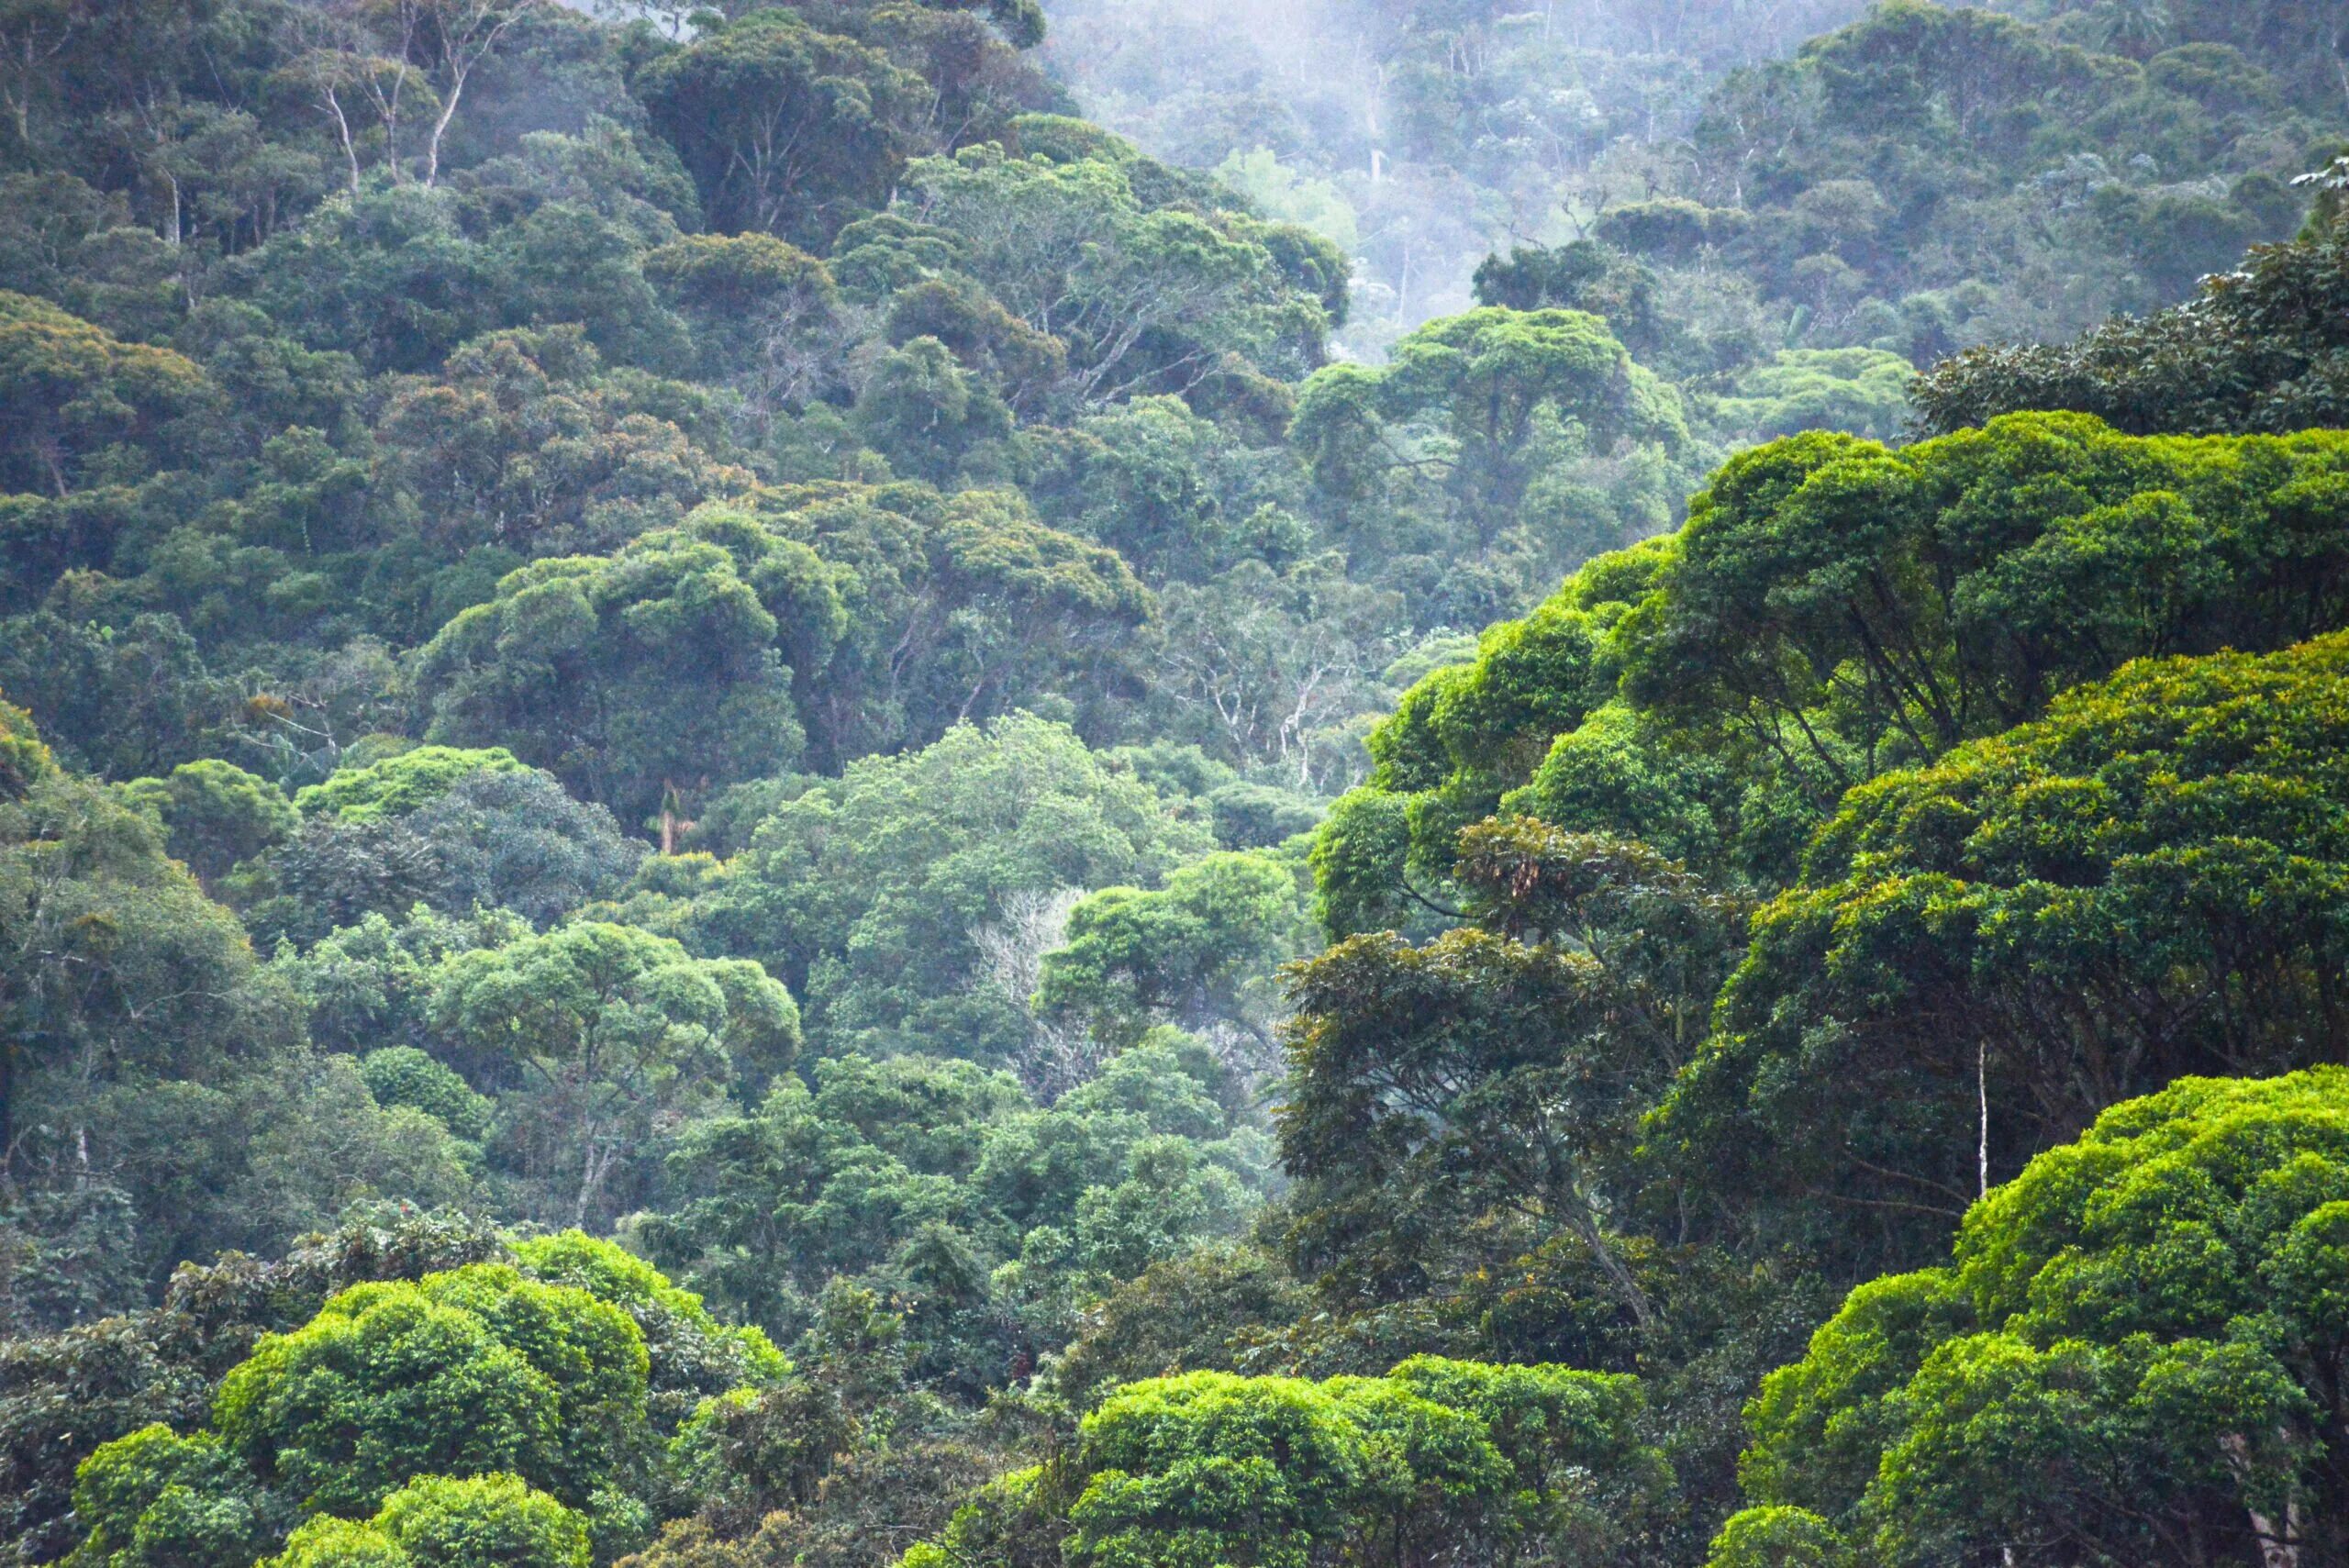 Атлантический лес Бразилии. Тропические леса амазонки в Бразилии. Лесные резерваты Юго-восточного Атлантического побережья. Мата Атлантика.